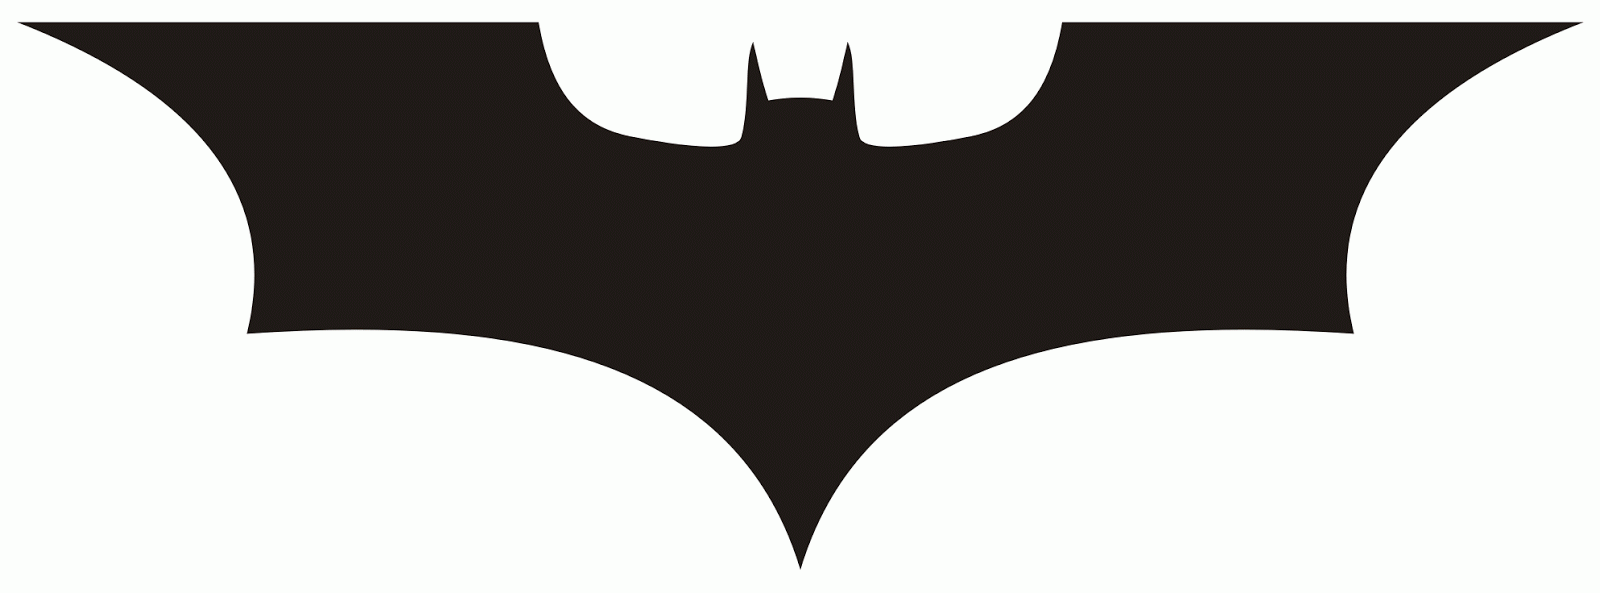 SciFinatic: Batman Special - ClipArt Best - ClipArt Best